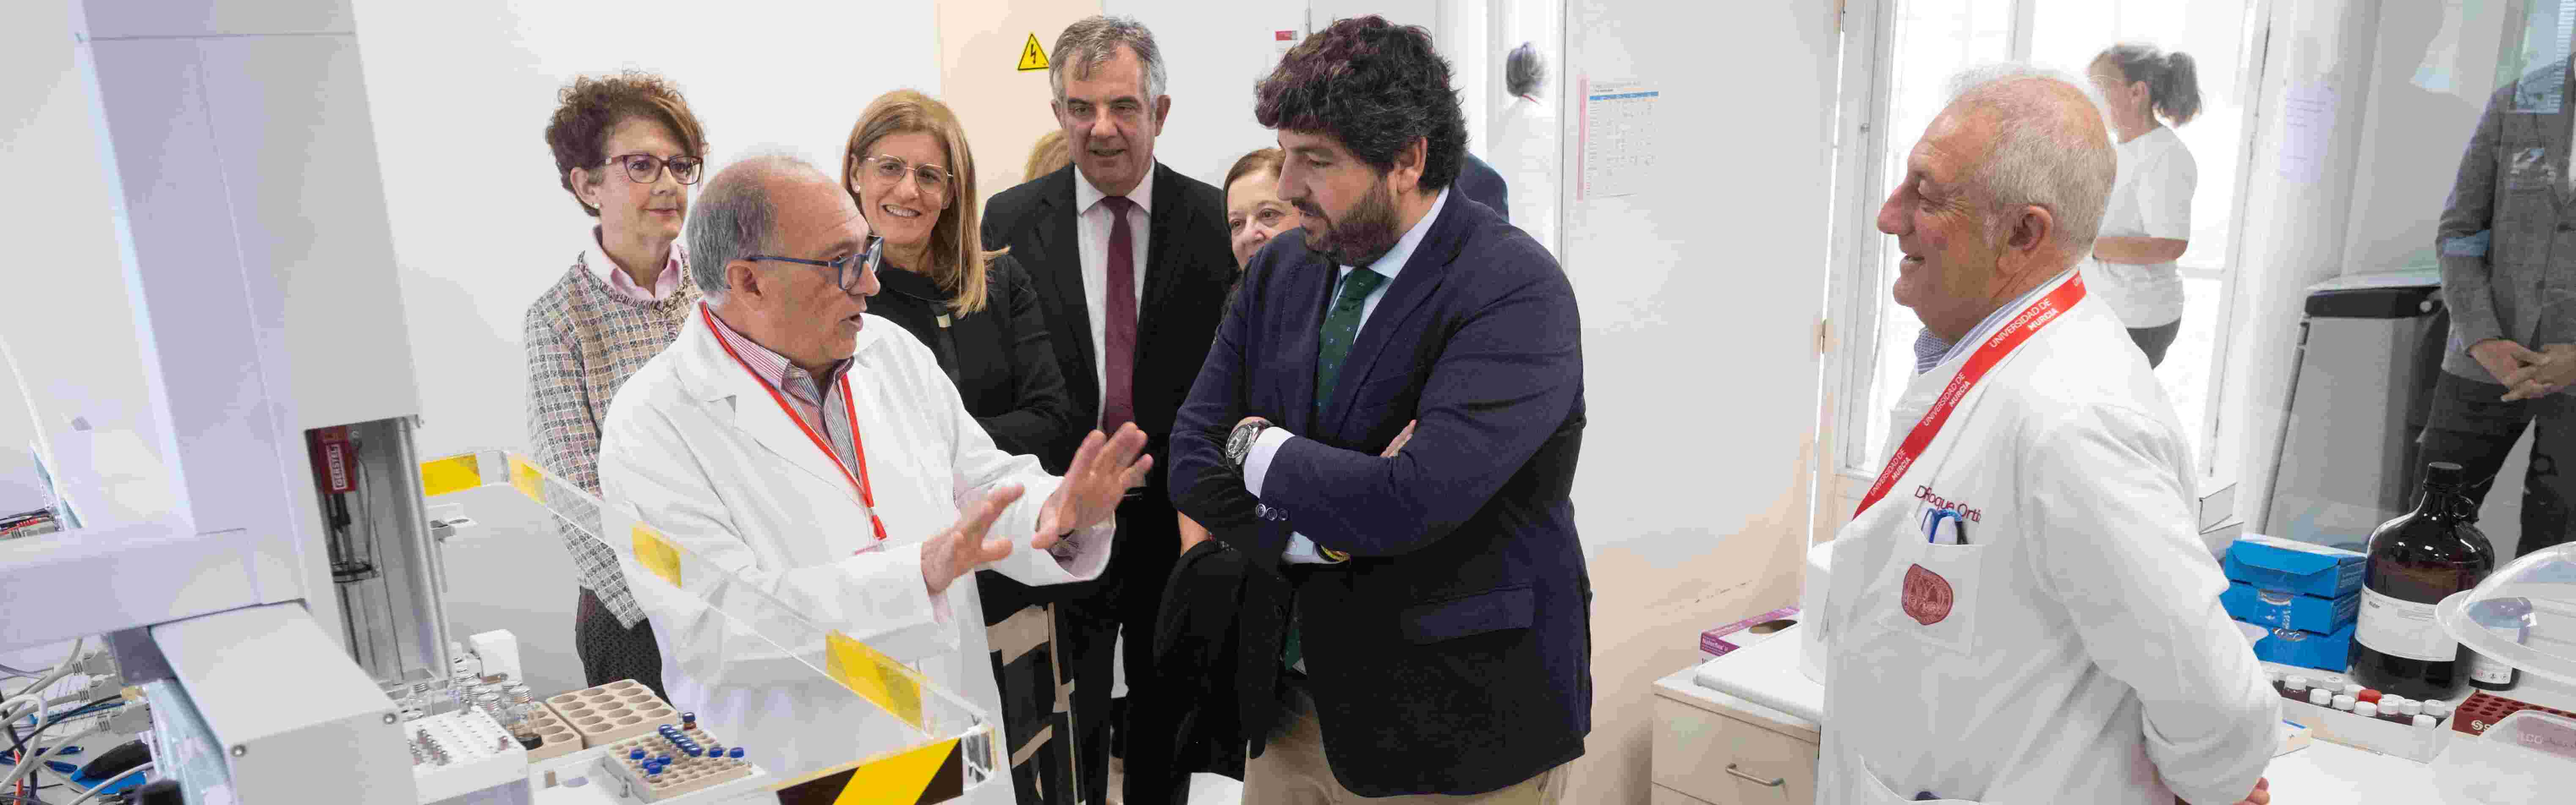 El presidente de la Comunidad Autónoma visita las instalaciones del Área Científica y Técnica de Investigación de la Universidad de Murcia